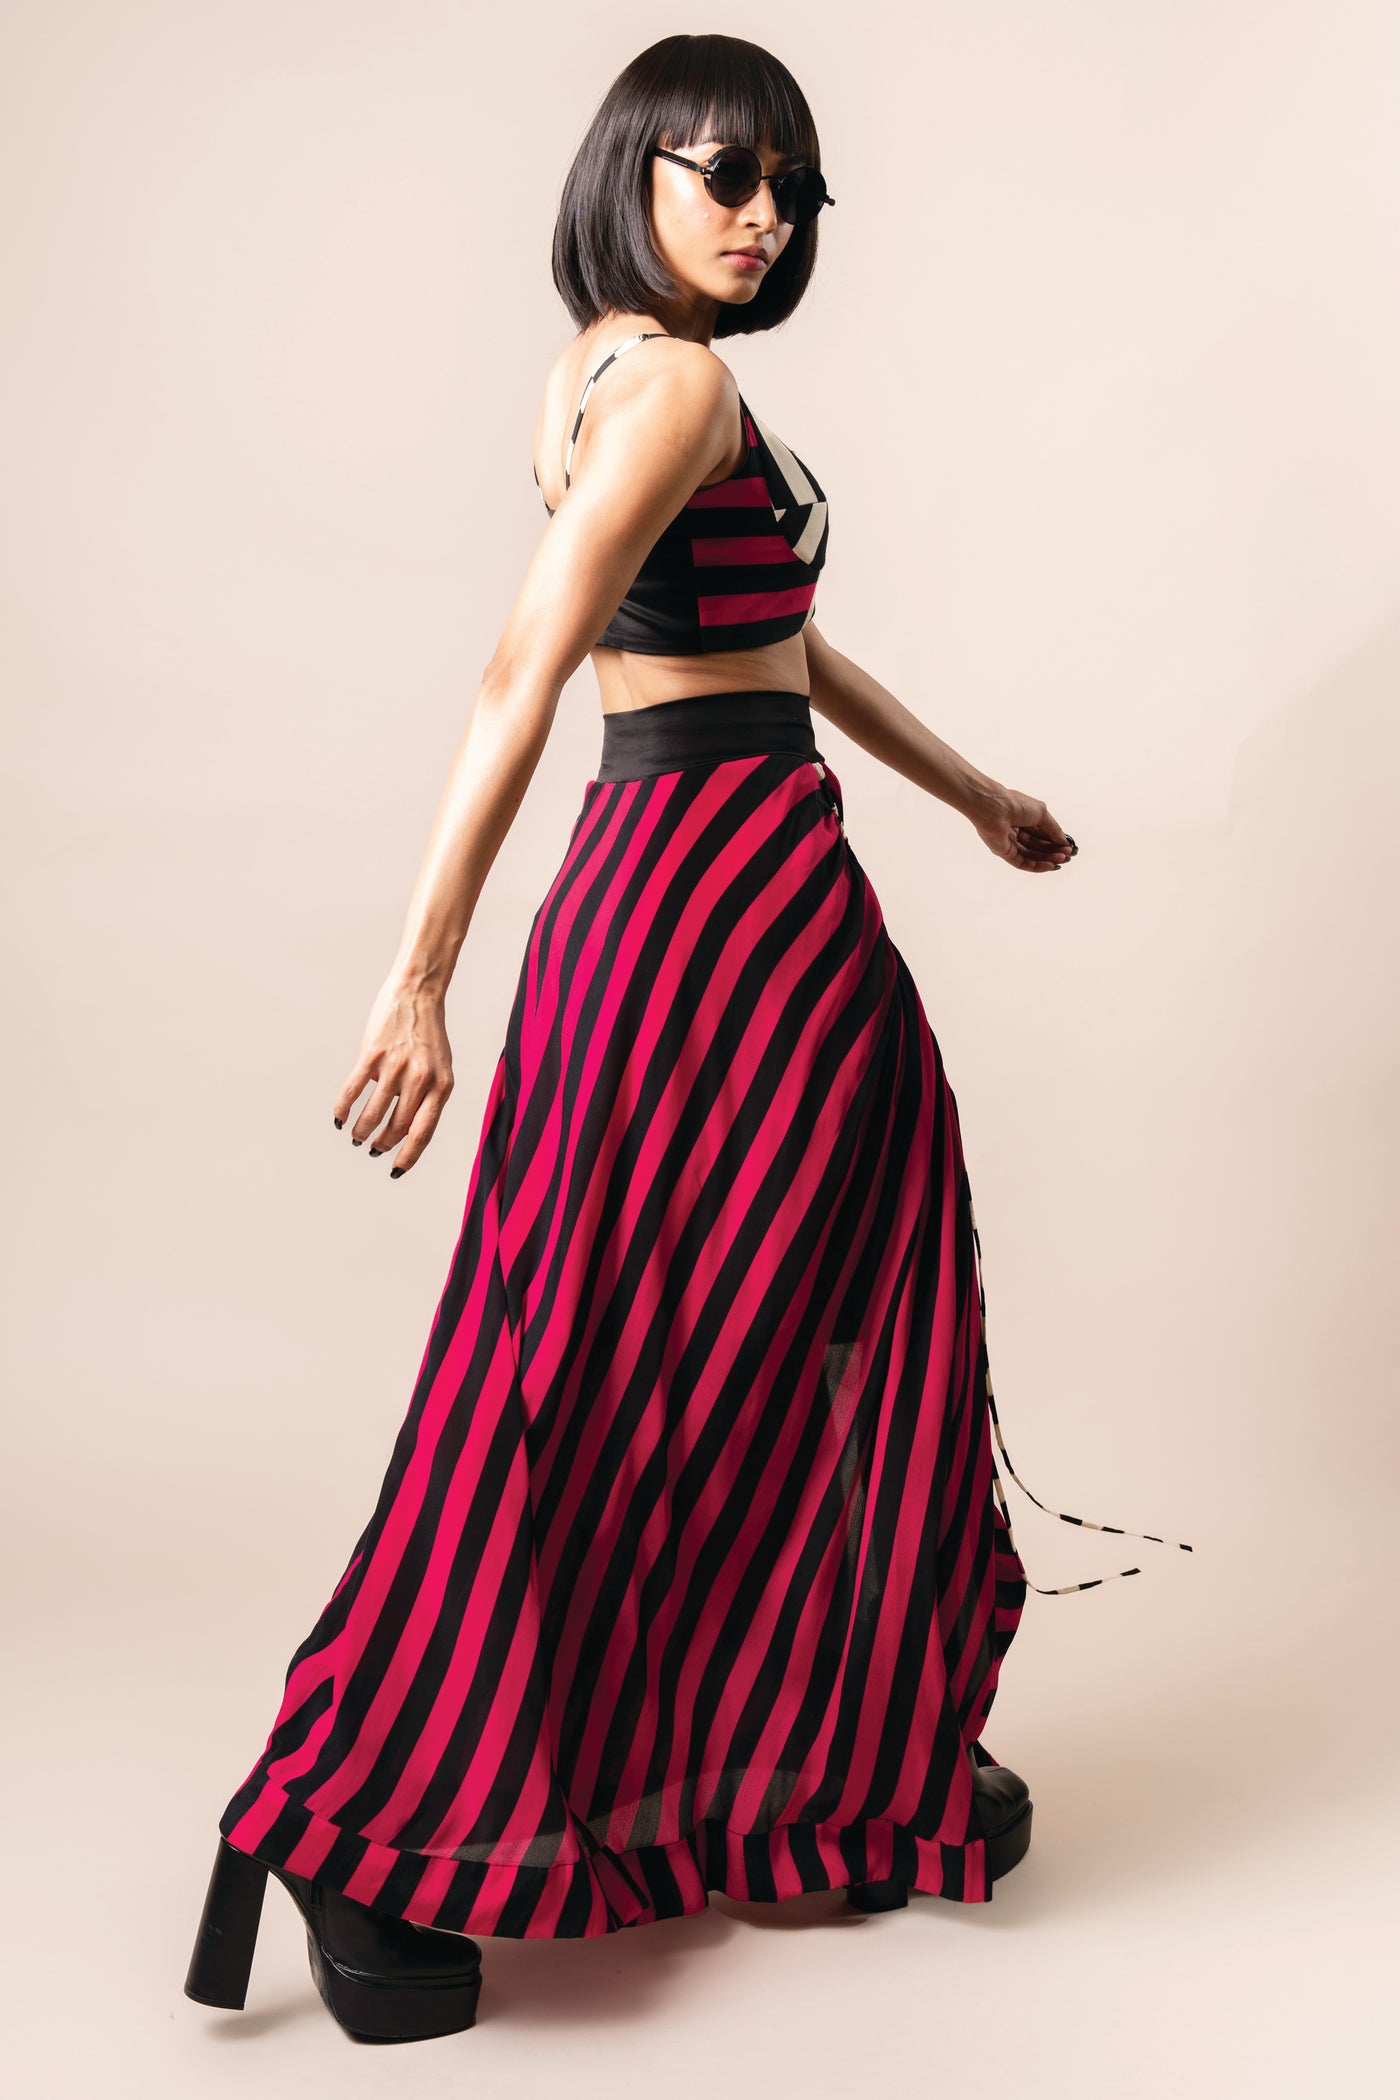 Nupur Kanoi Bustier With Circular Gather Skirt Magenta indian designer wear online shopping melange singapore